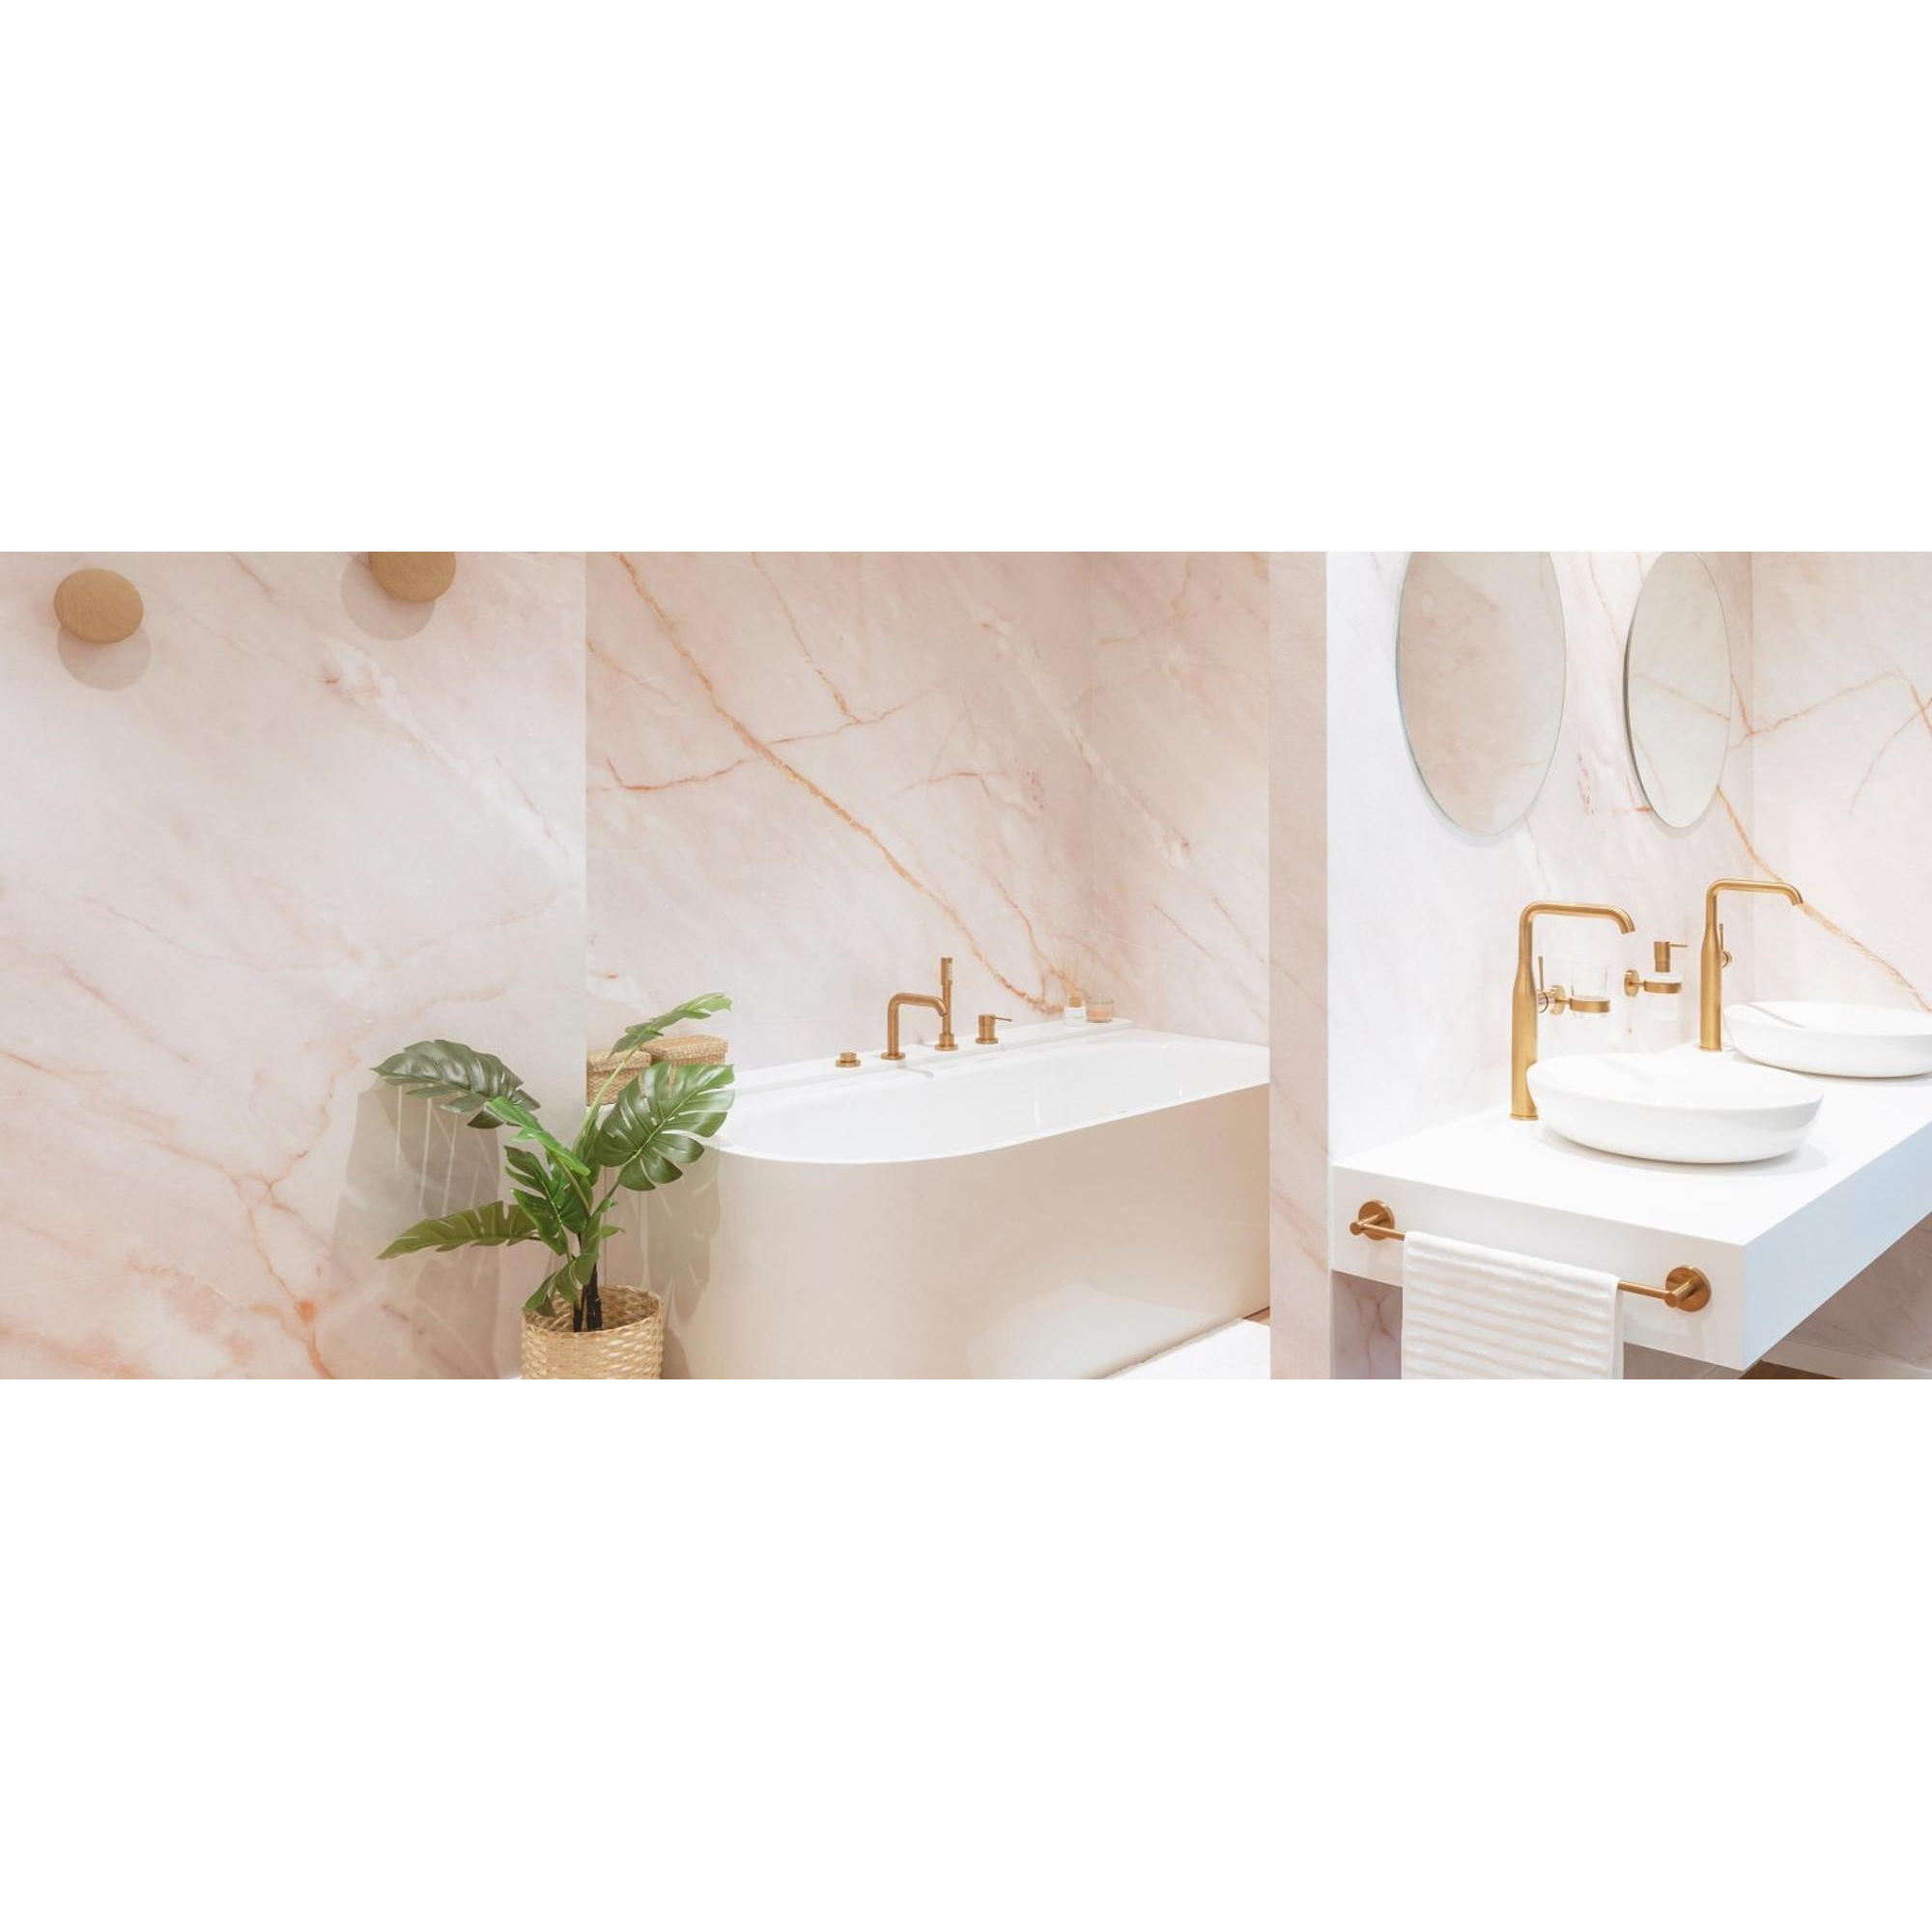 Robinet design salle de bain mitigeur de lavabo bec cascade avec brise jet  chrome vidage complet